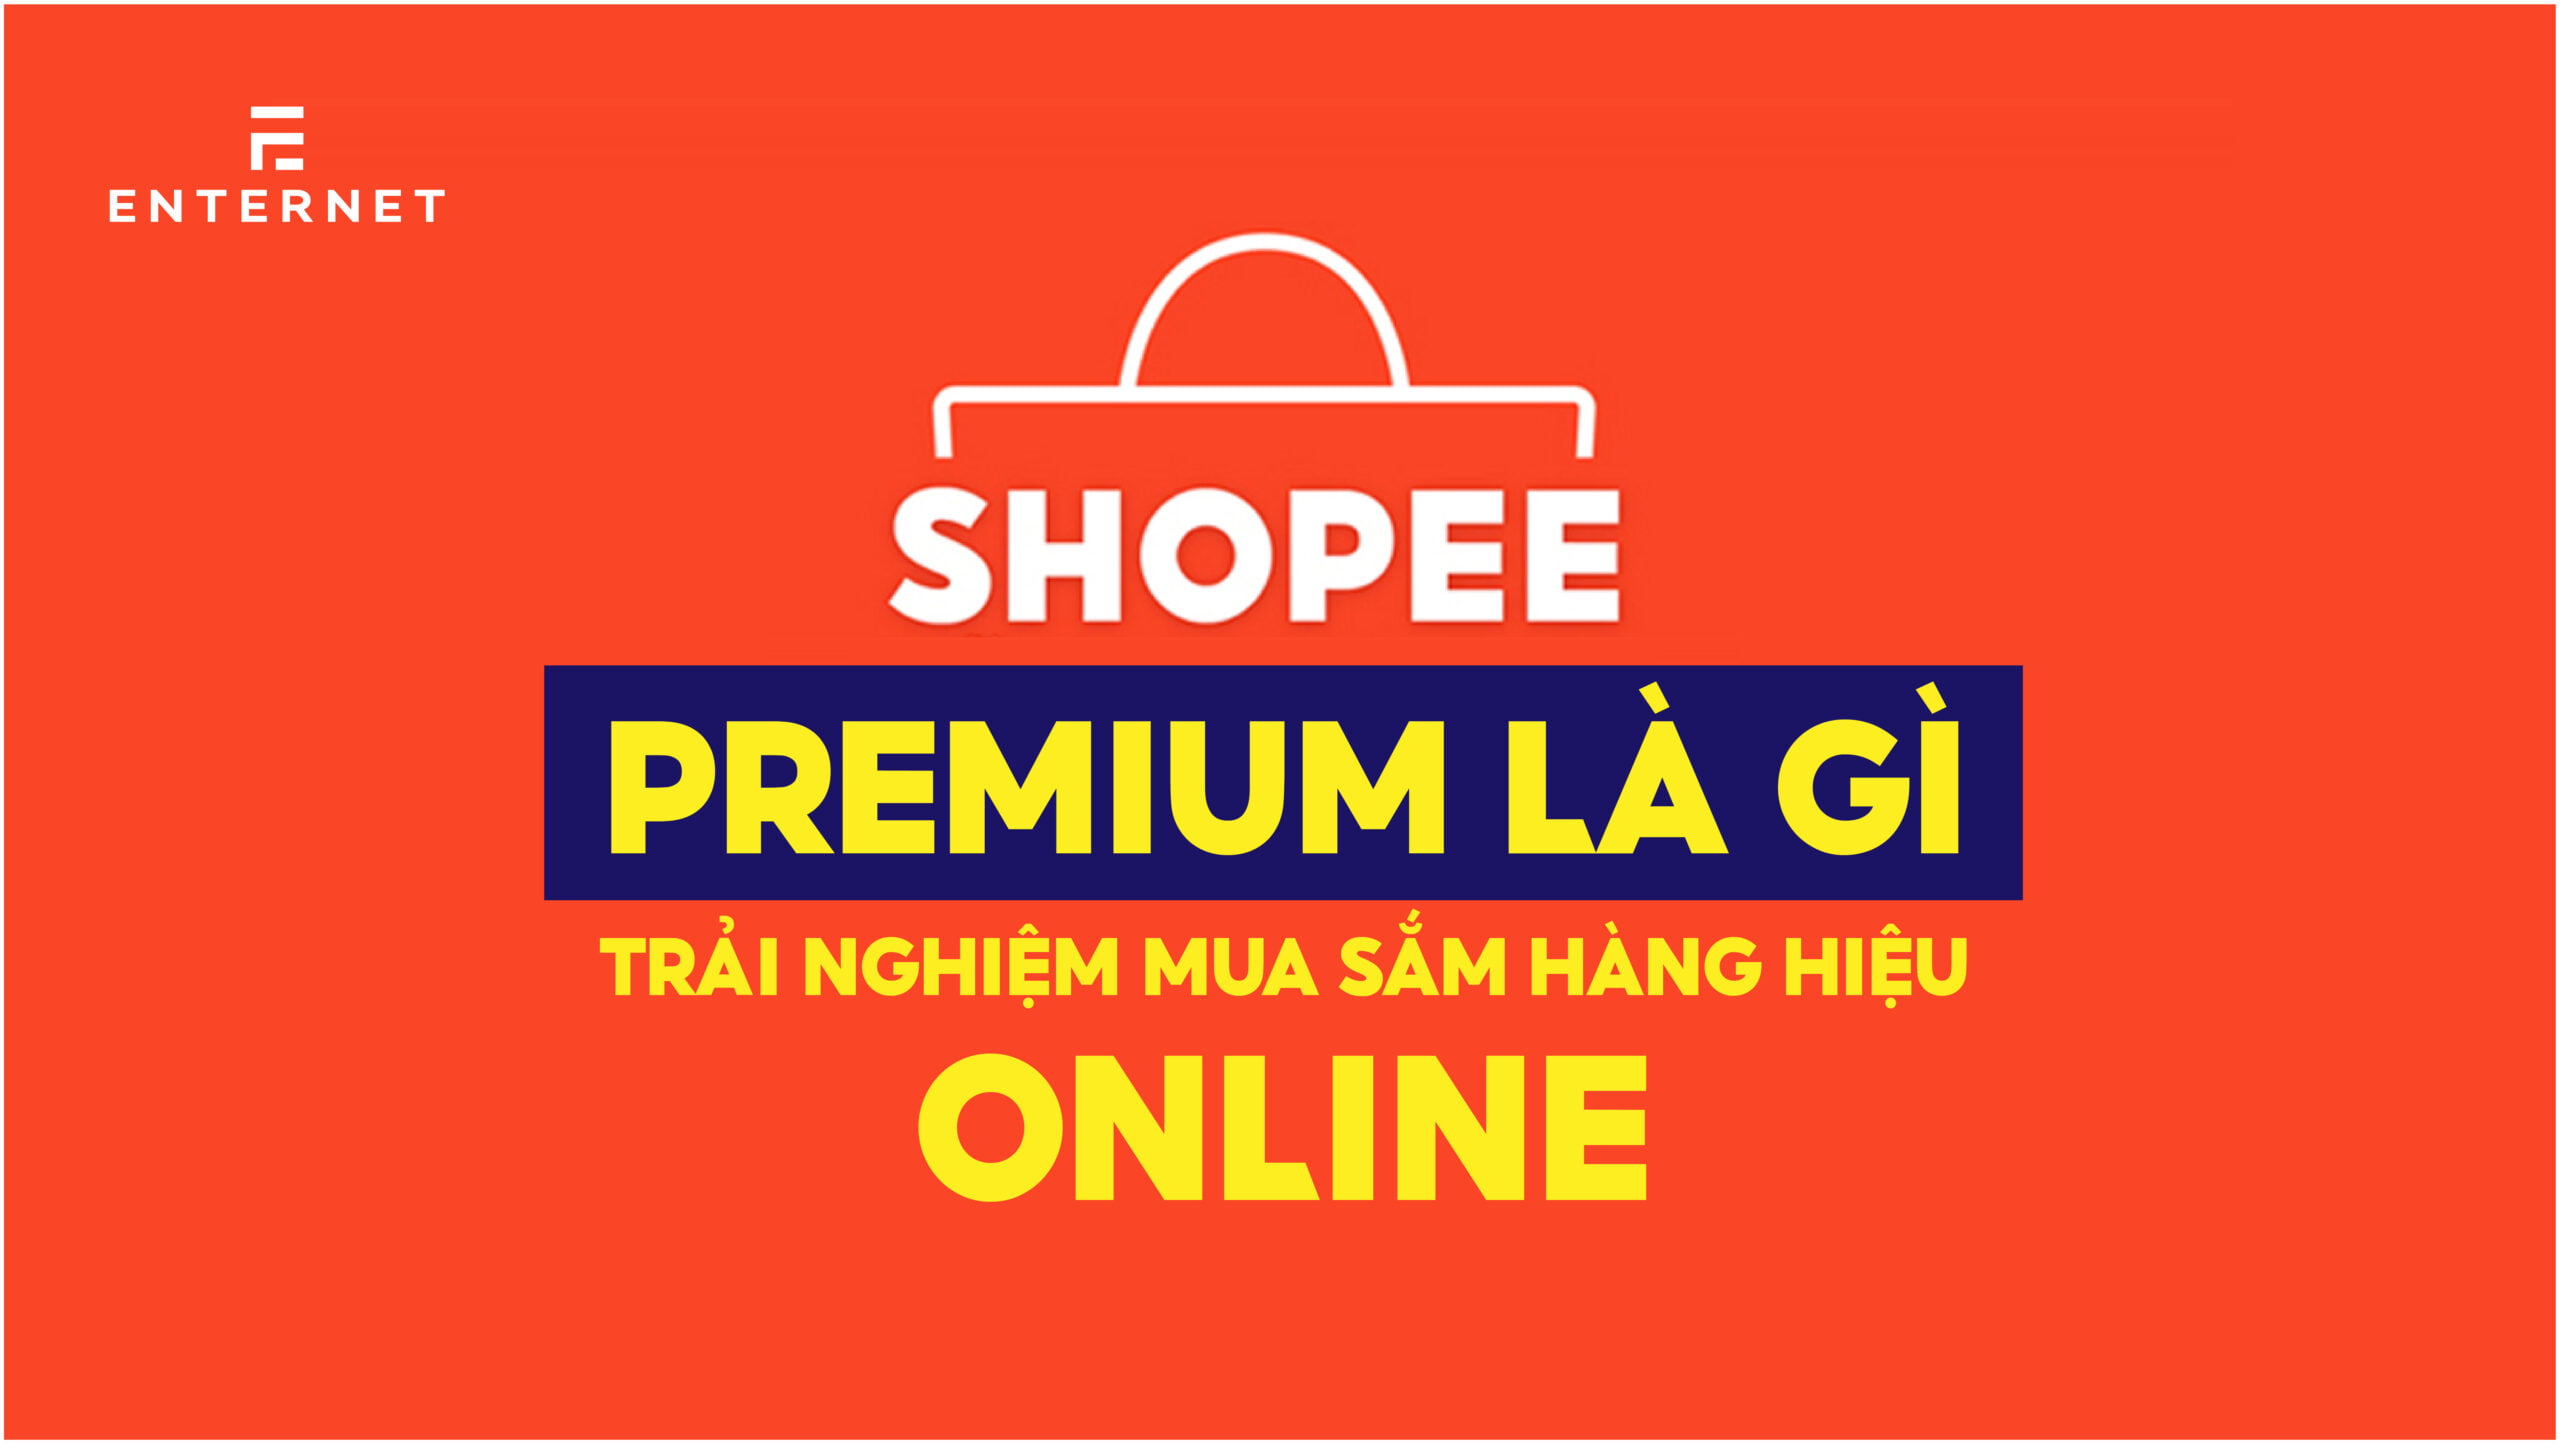 Shopee Premium là gì? Trải nghiệm mua sắm hàng hiệu online